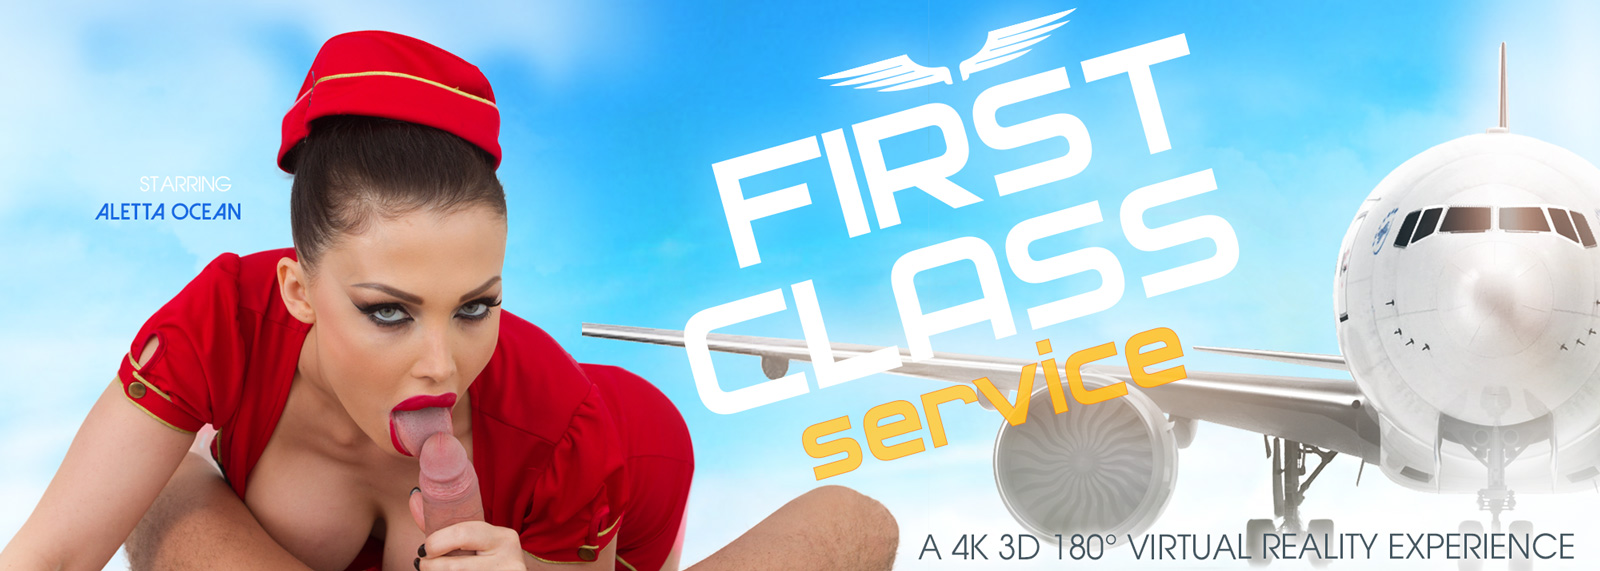 First Class Service - VR Porn Video, Starring: Aletta Ocean